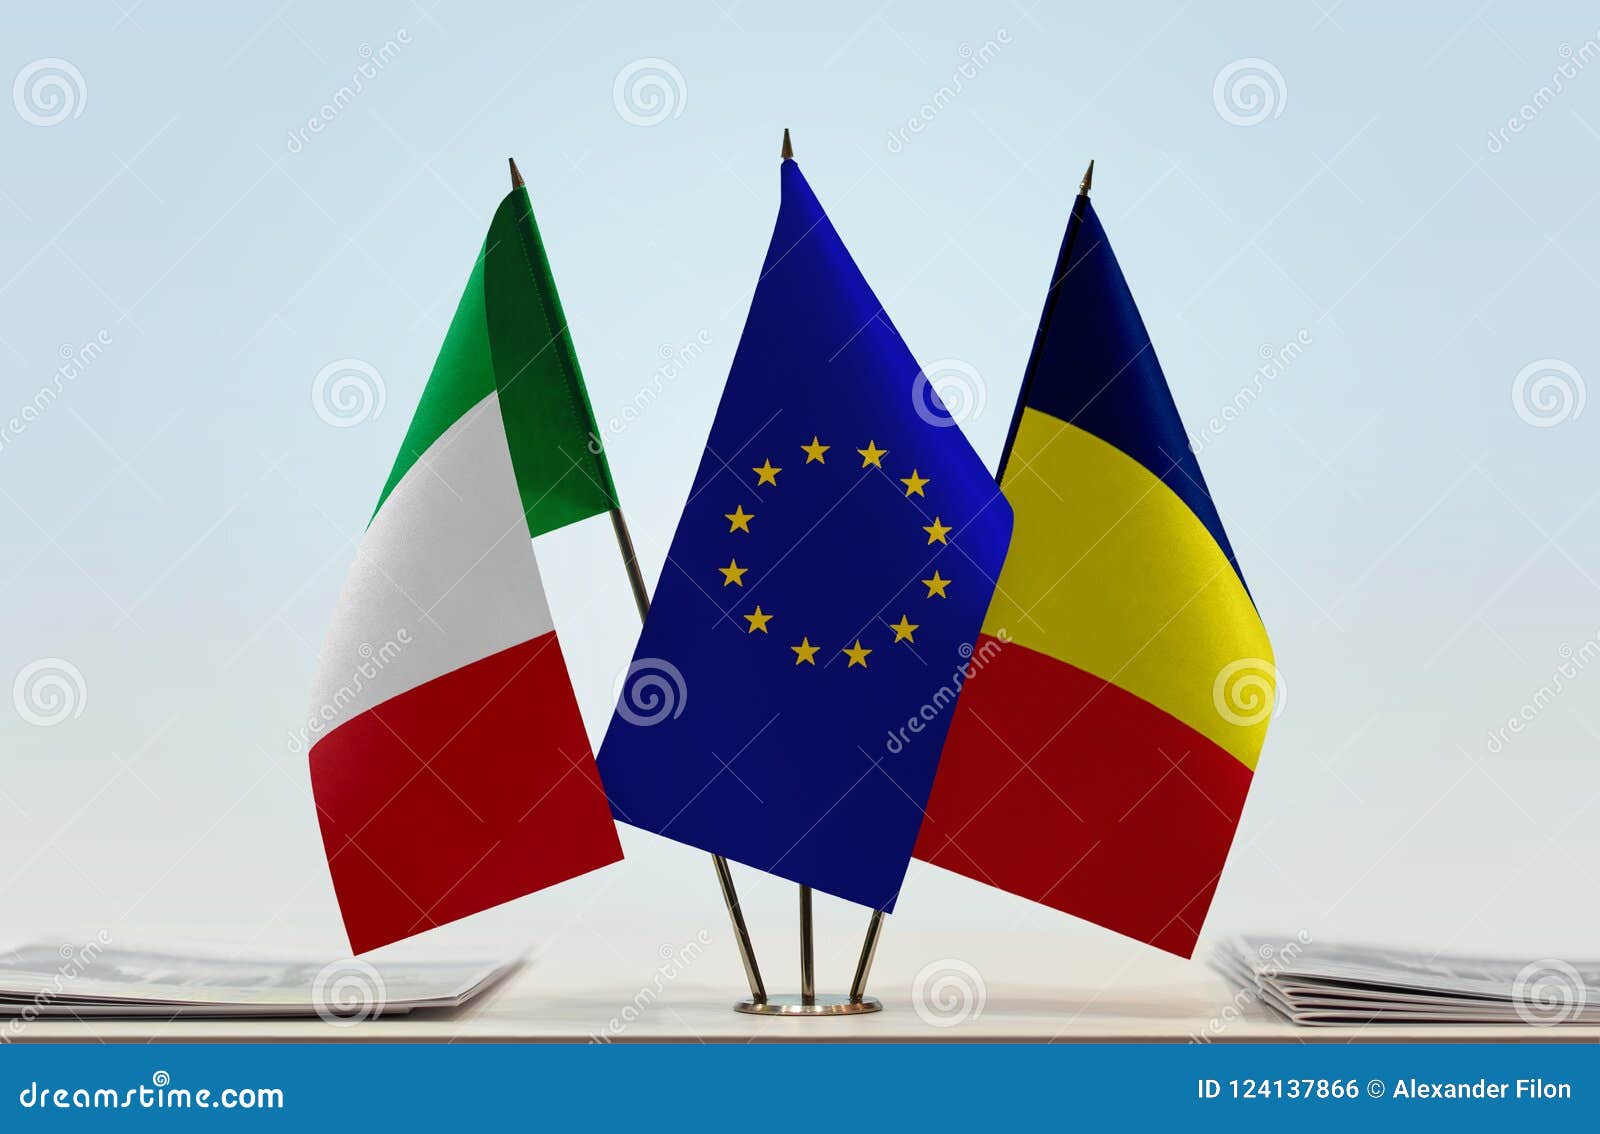 Flaggen von Italien EU und von Tschad. Tischplattenflaggen von Italien und von Tschad mit Flagge der Europäischen Gemeinschaft in der Mitte